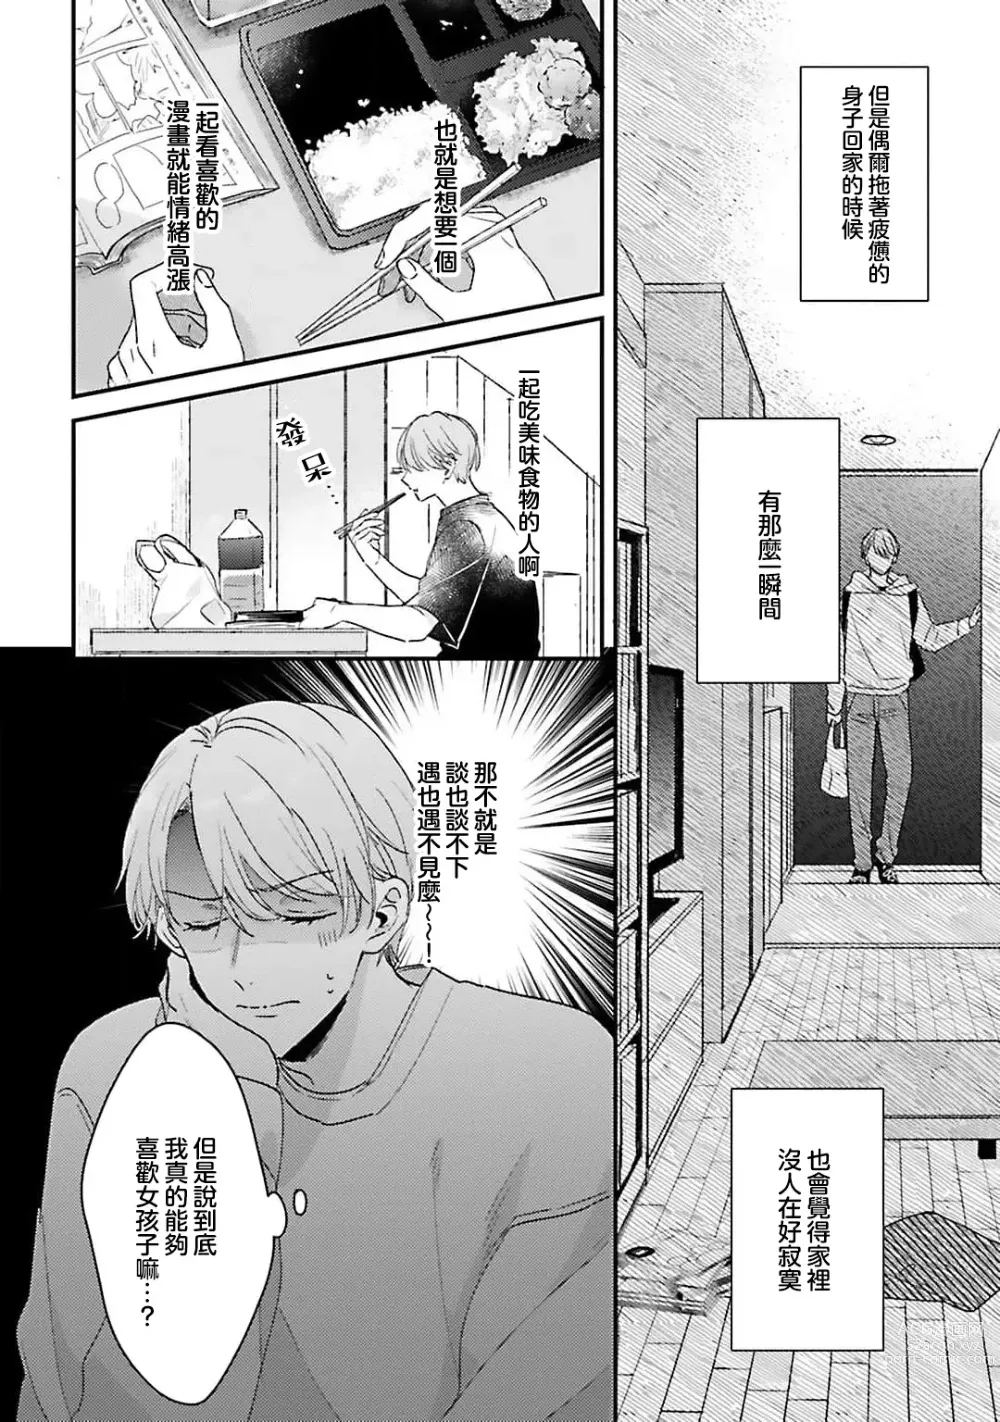 Page 5 of manga 绽放的恋爱皆为醉与甜1